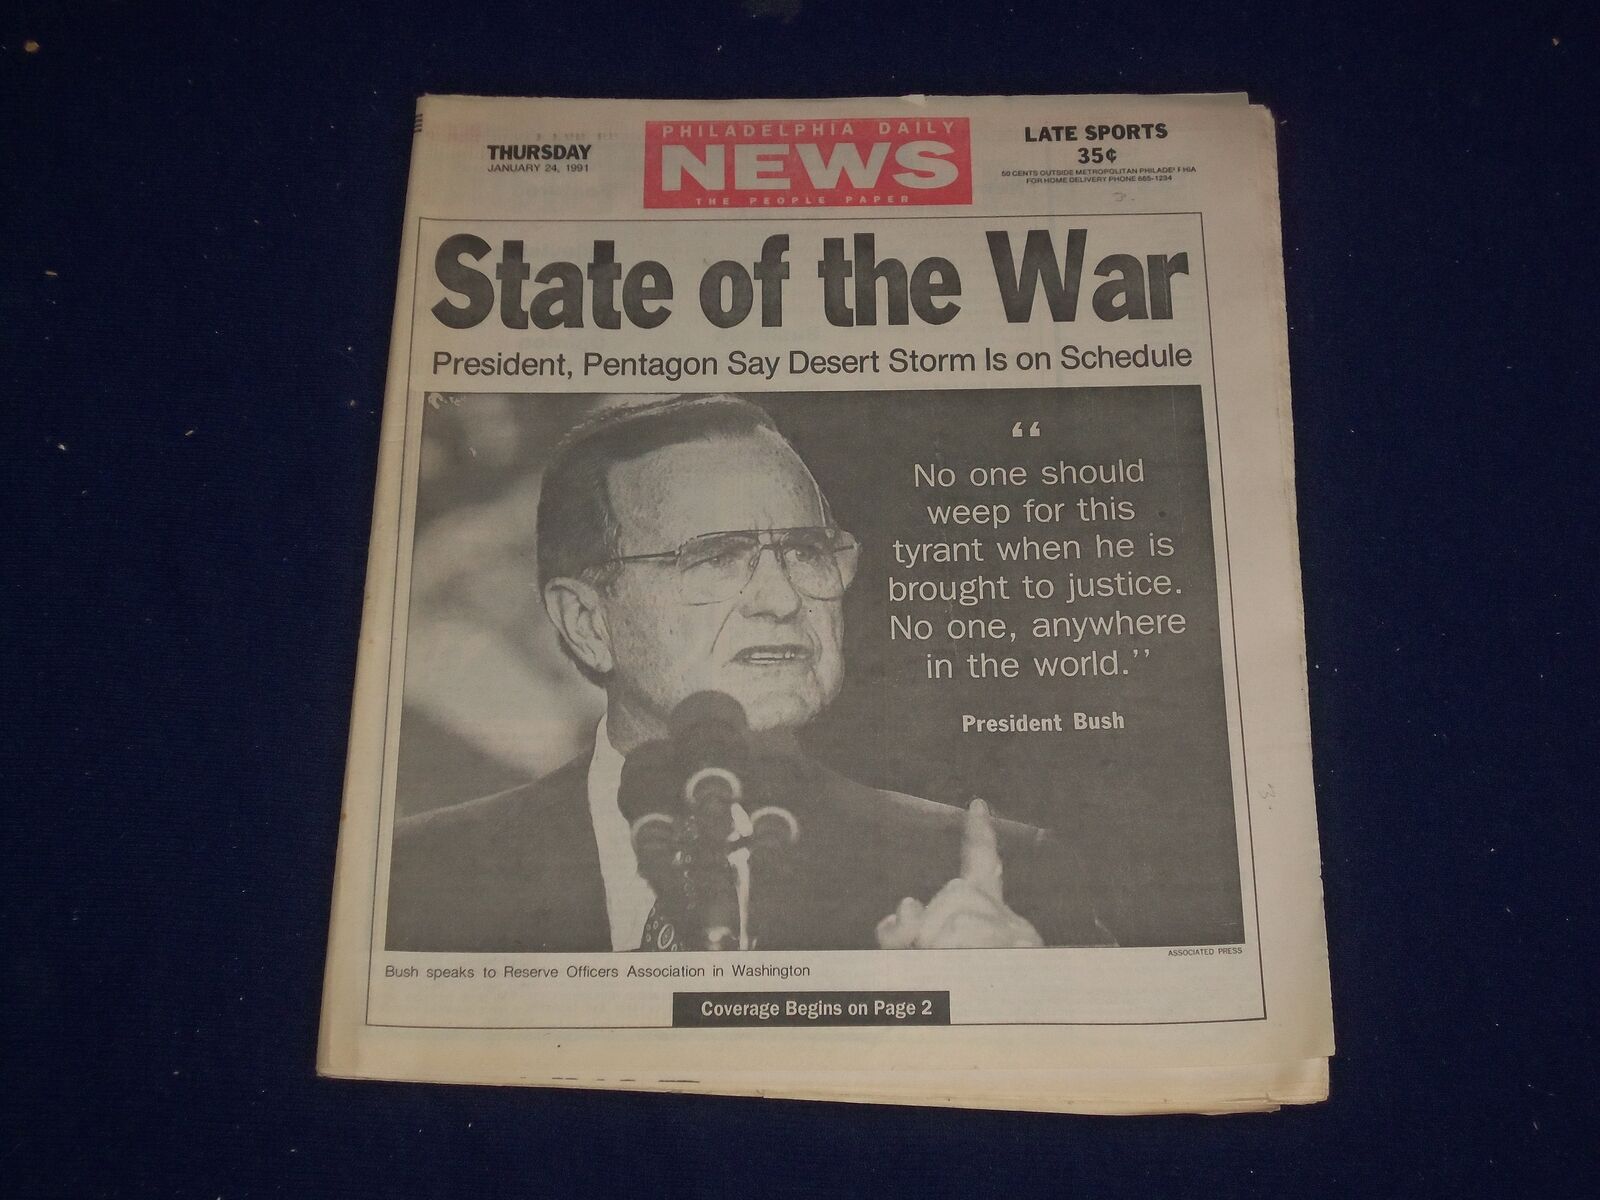 1991 JAN 24 PHILADELPHIA DAILY NEWS - BUSH: STATE OF DESERT STORM WAR - NP 2979